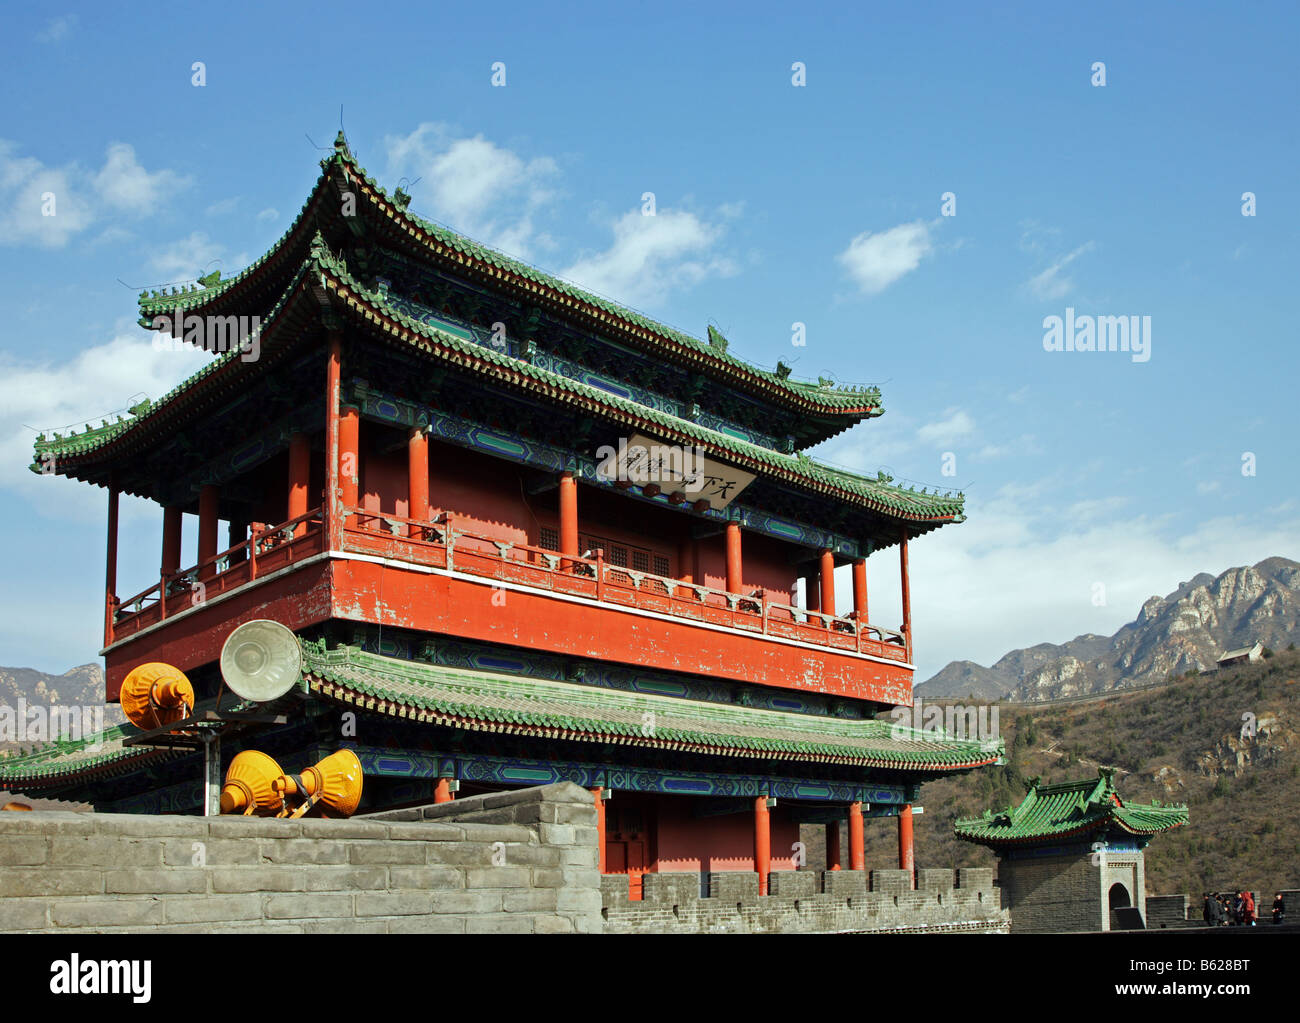 Juyongguan Gate Great Wall of China Stock Photo